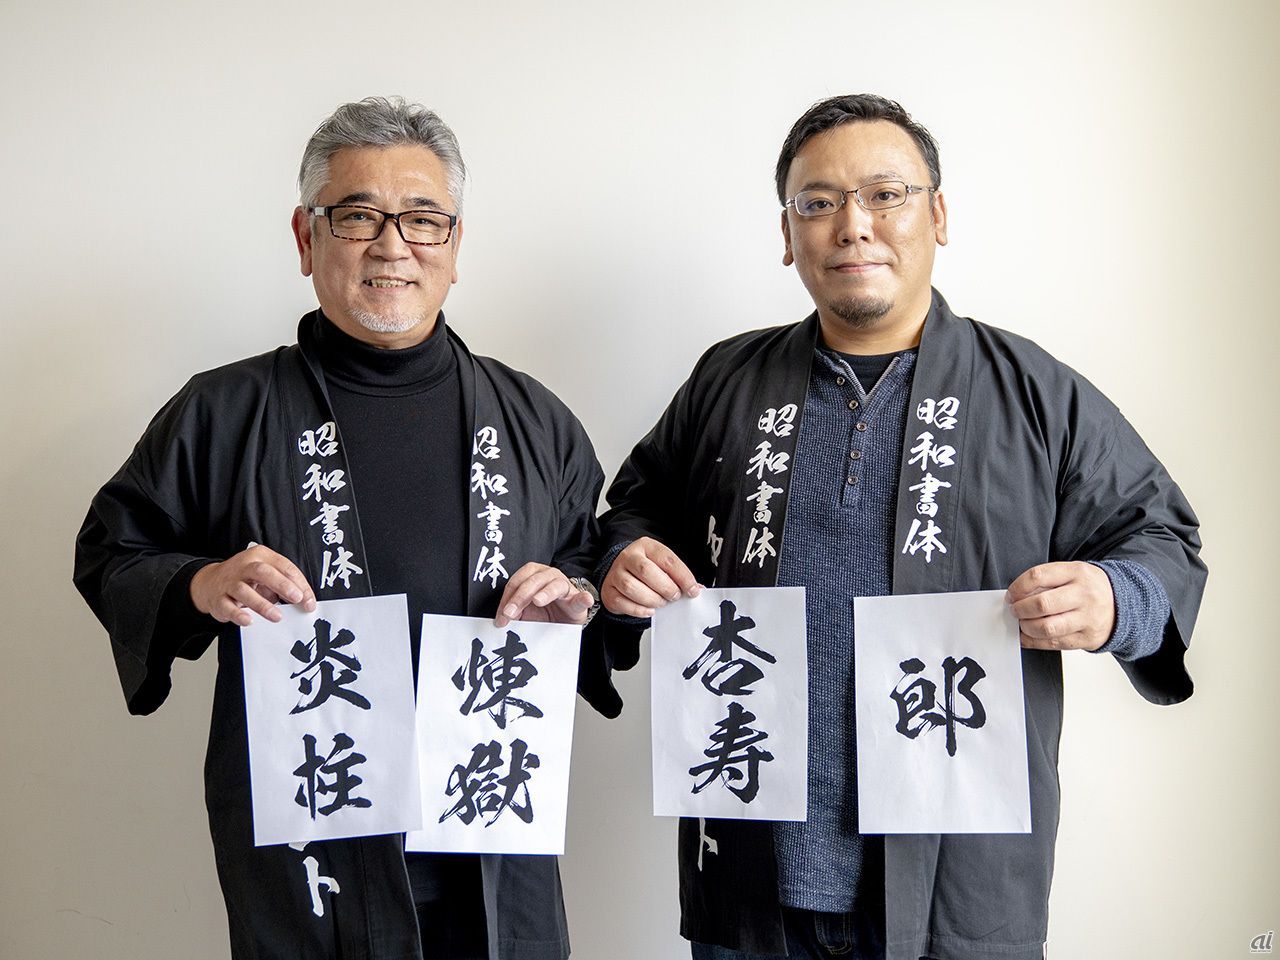 大人気アニメ 鬼滅の刃 にも採用 85歳の書家が描く 毛筆フォント と親子3代の挑戦 Cnet Japan